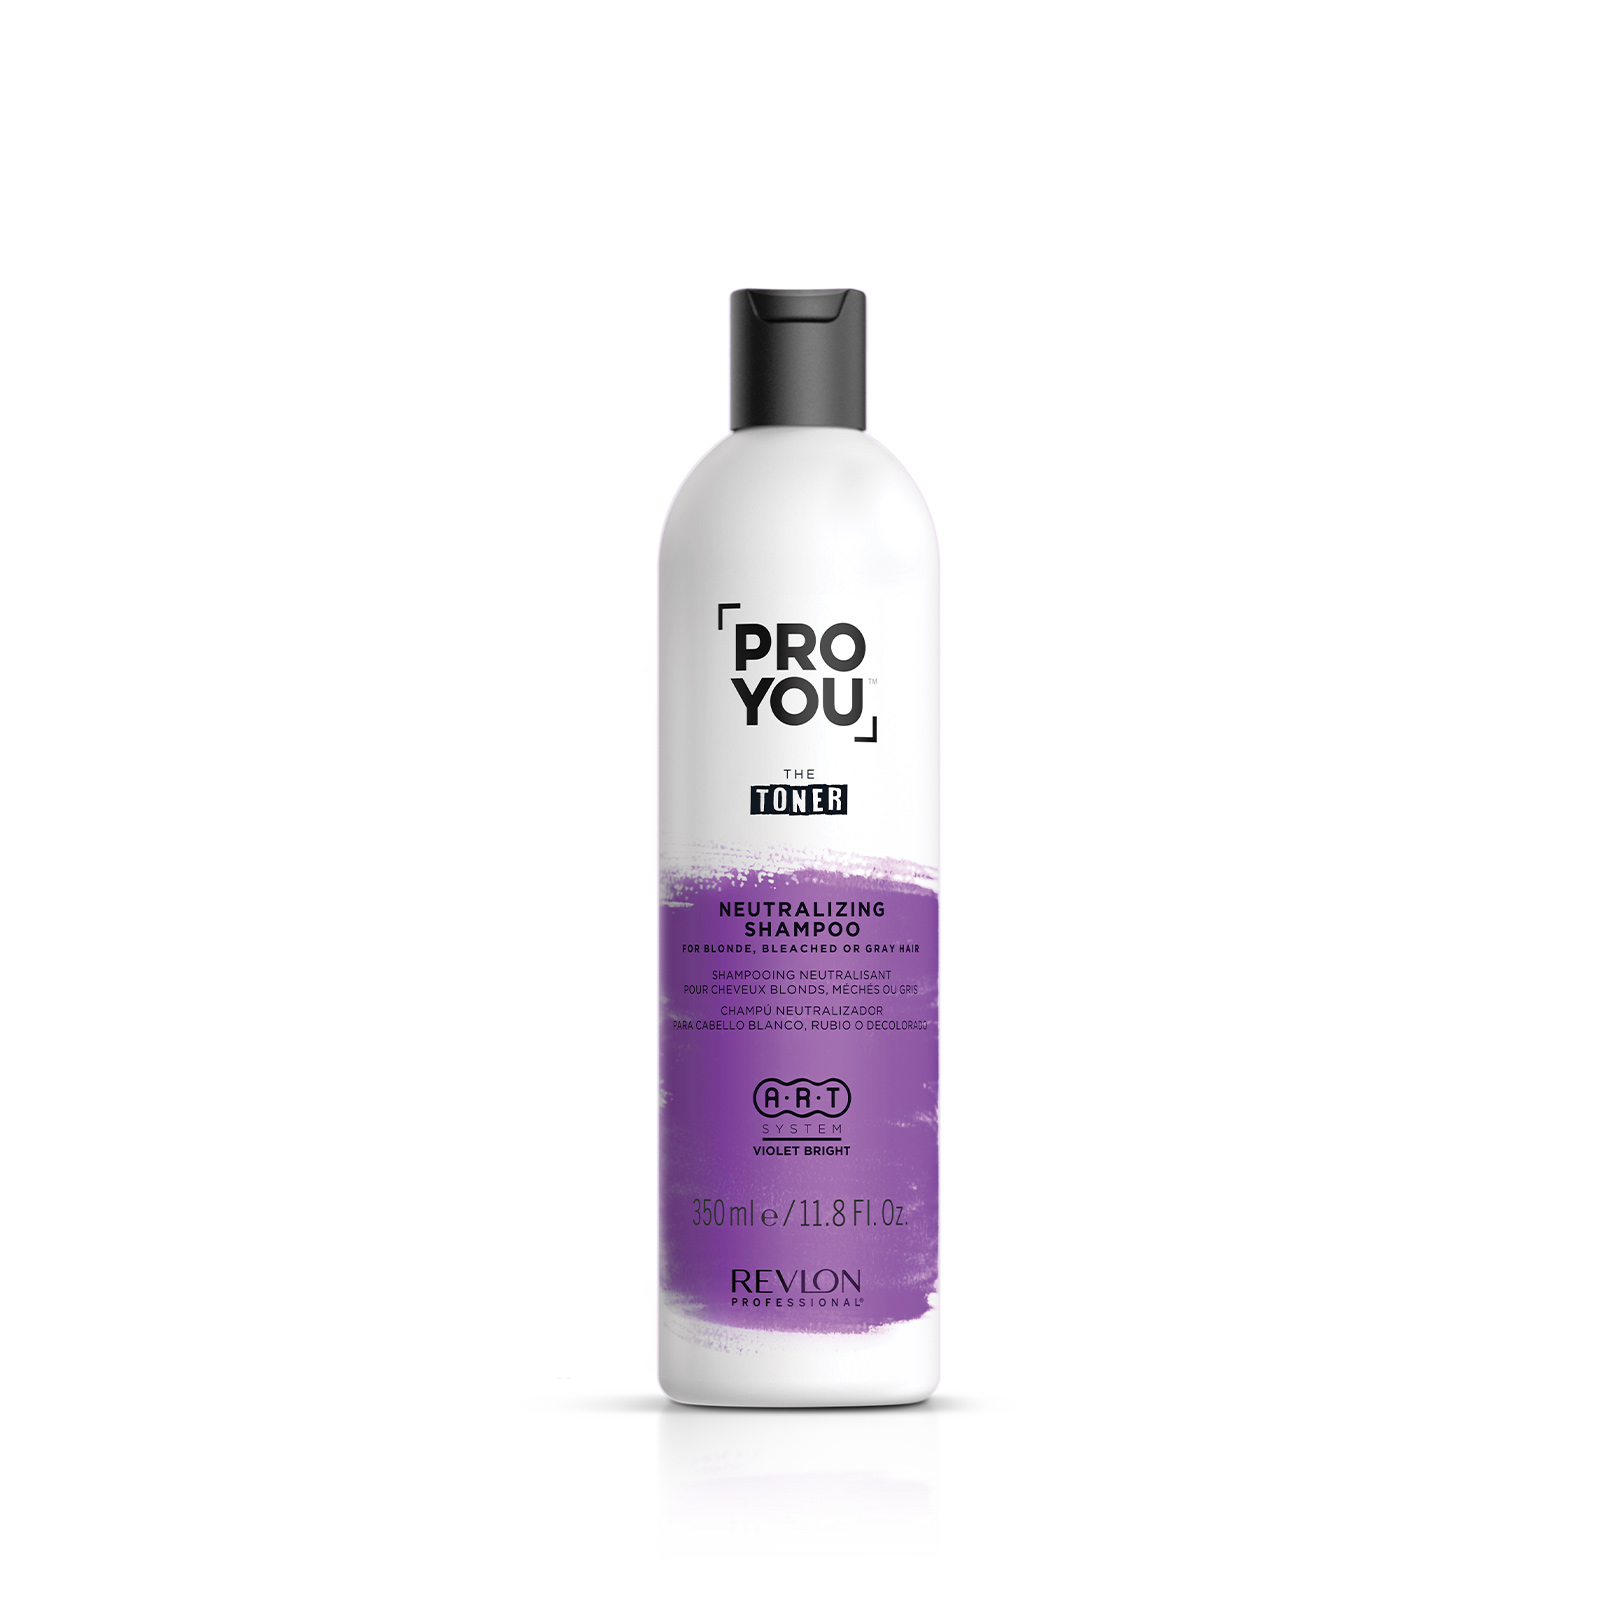 You™ Shampoo Professional - Revlon Toner The Neutralizing Pro